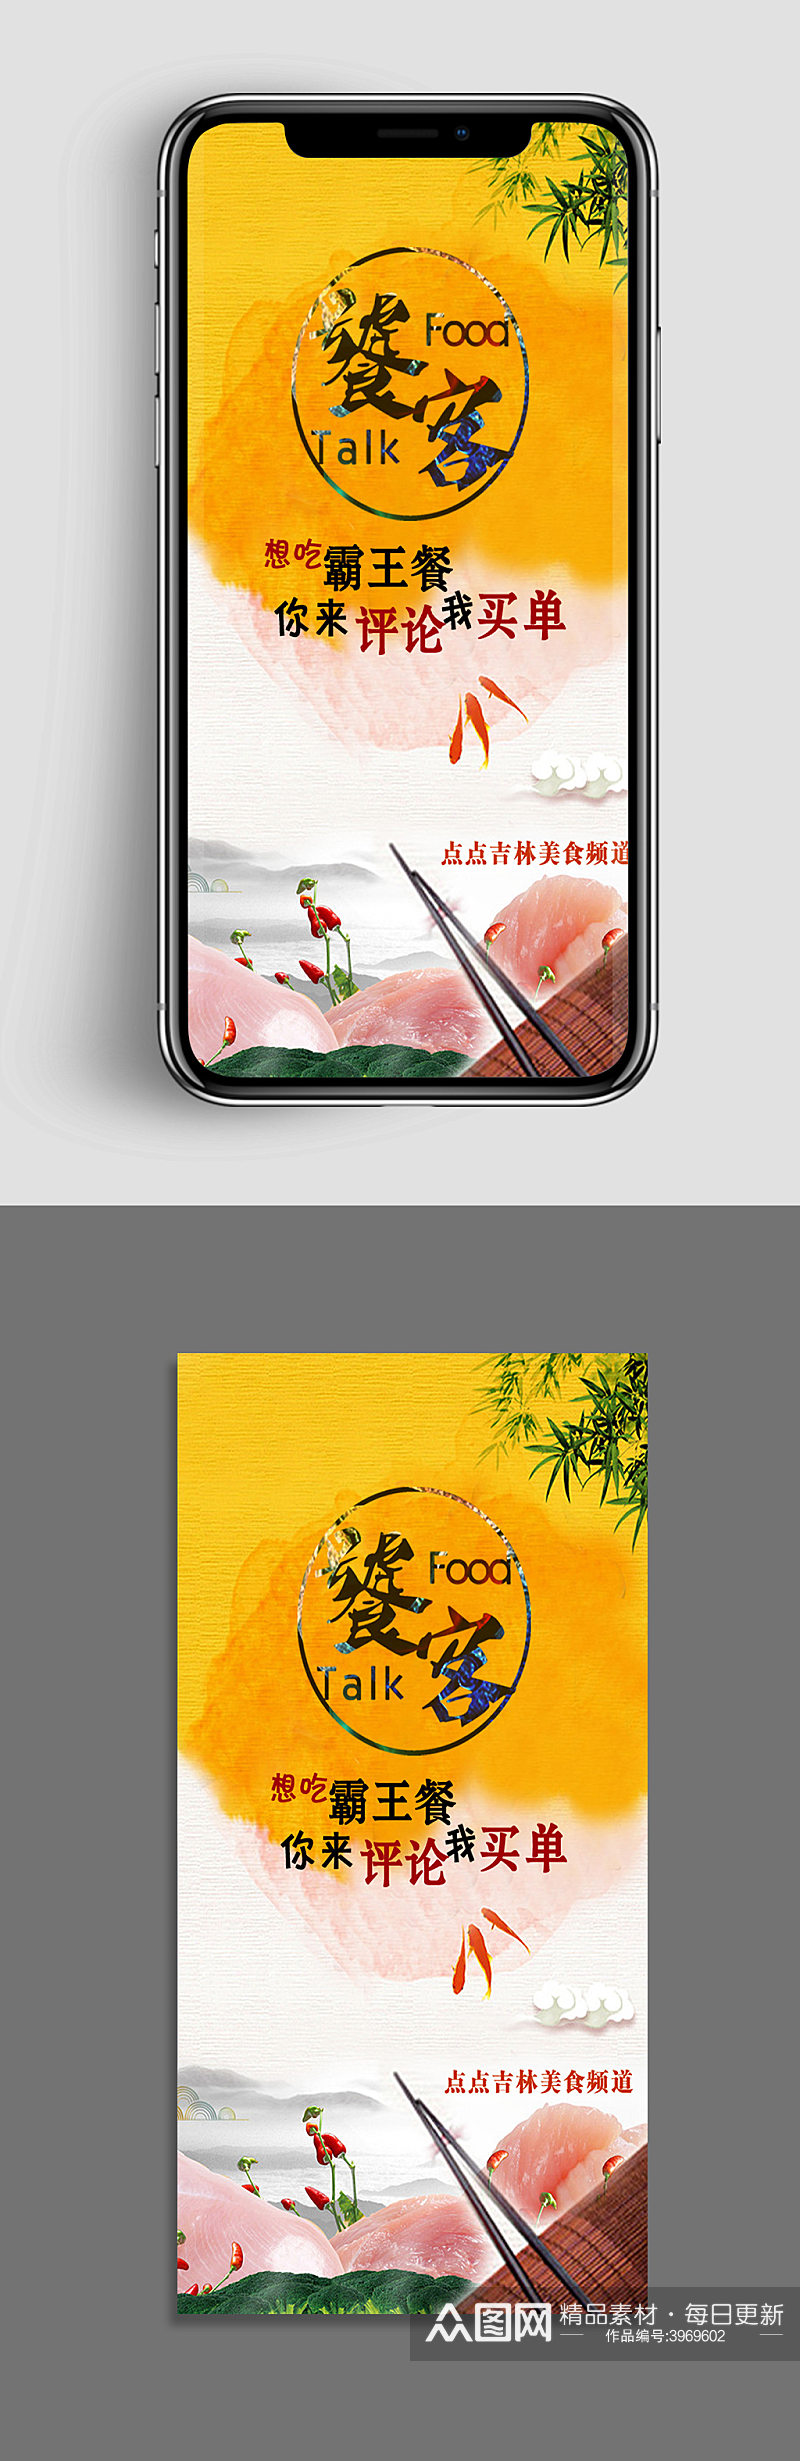 美食app霸王餐手机宣传海报素材